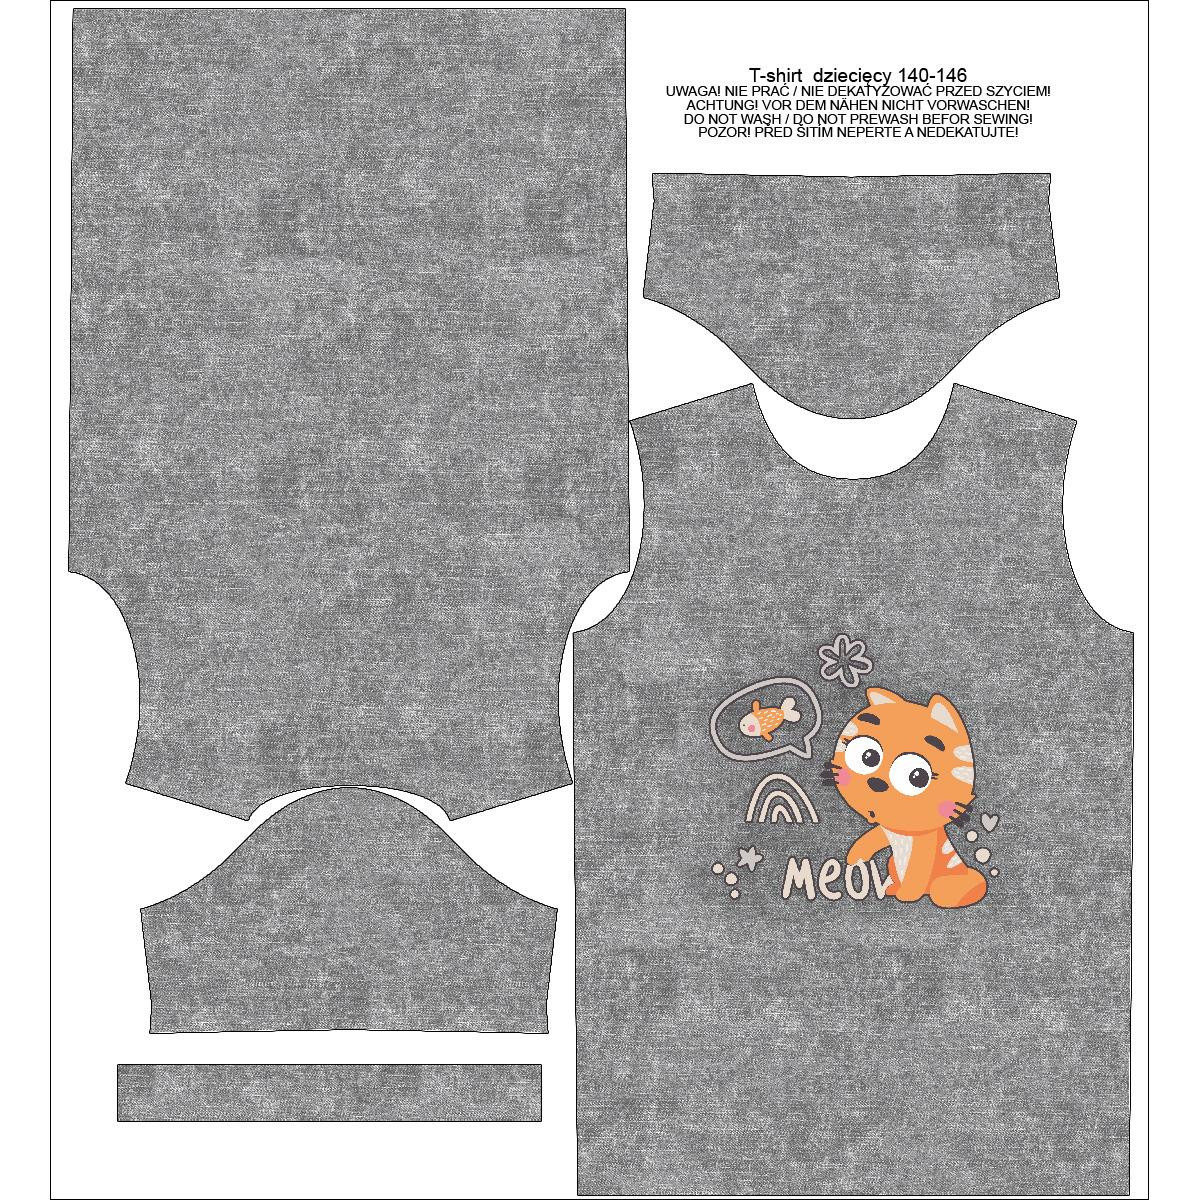 T-SHIRT DZIECIĘCY - KOTY / meow (KOCI ŚWIAT) / ACID WASH SZARY - single jersey